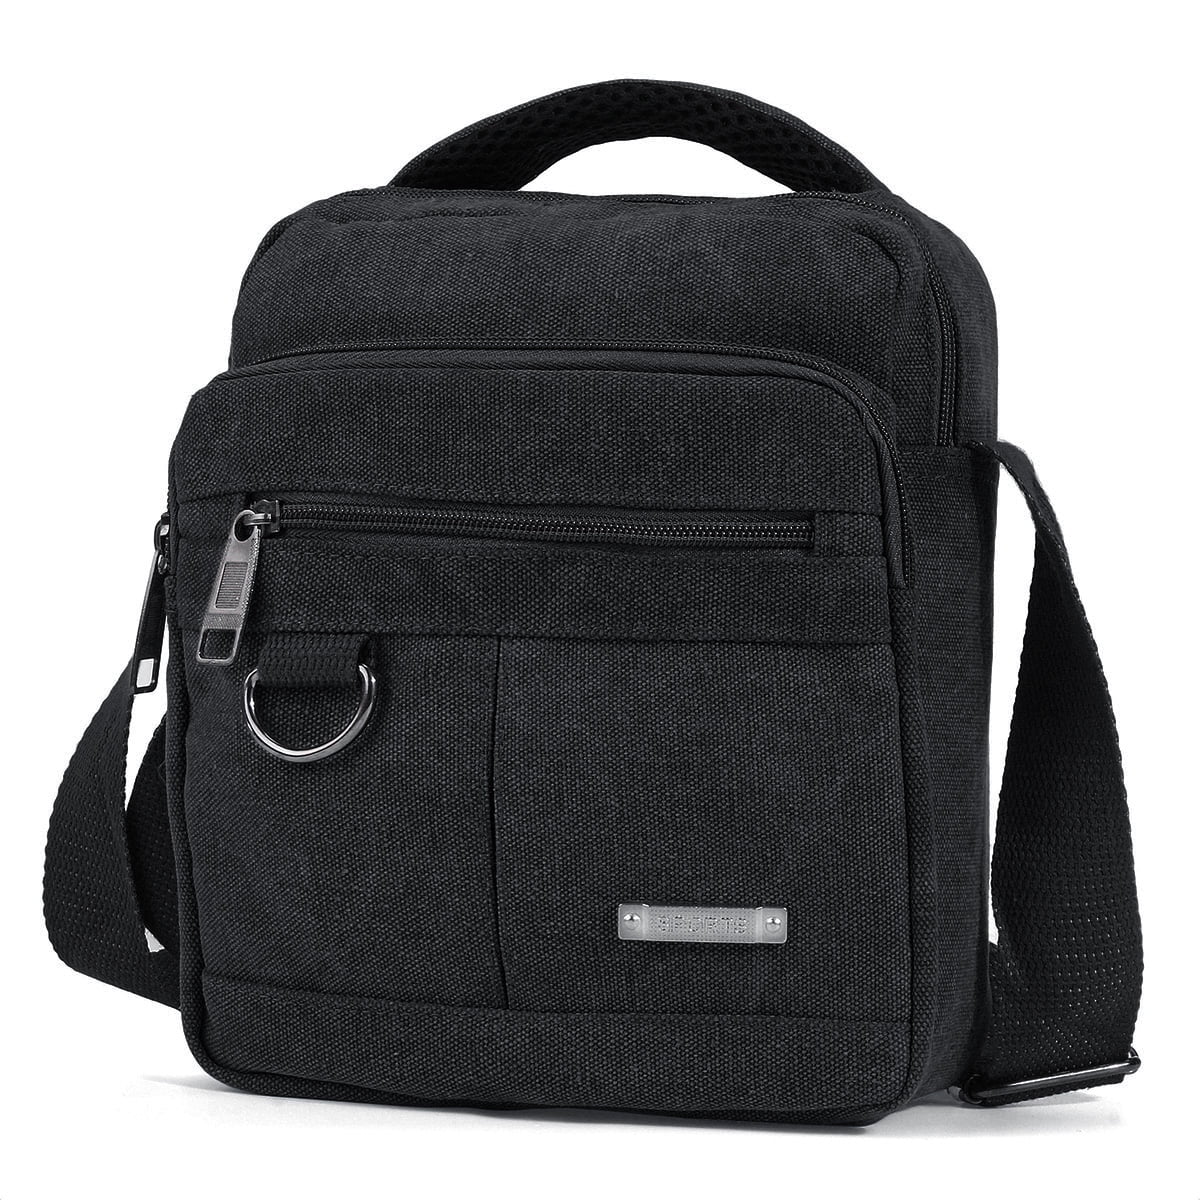 Stoneway - Sling Bag for Men Women Sling Backpack Laptop Shoulder Bag Retro Canvas Crossbody ...